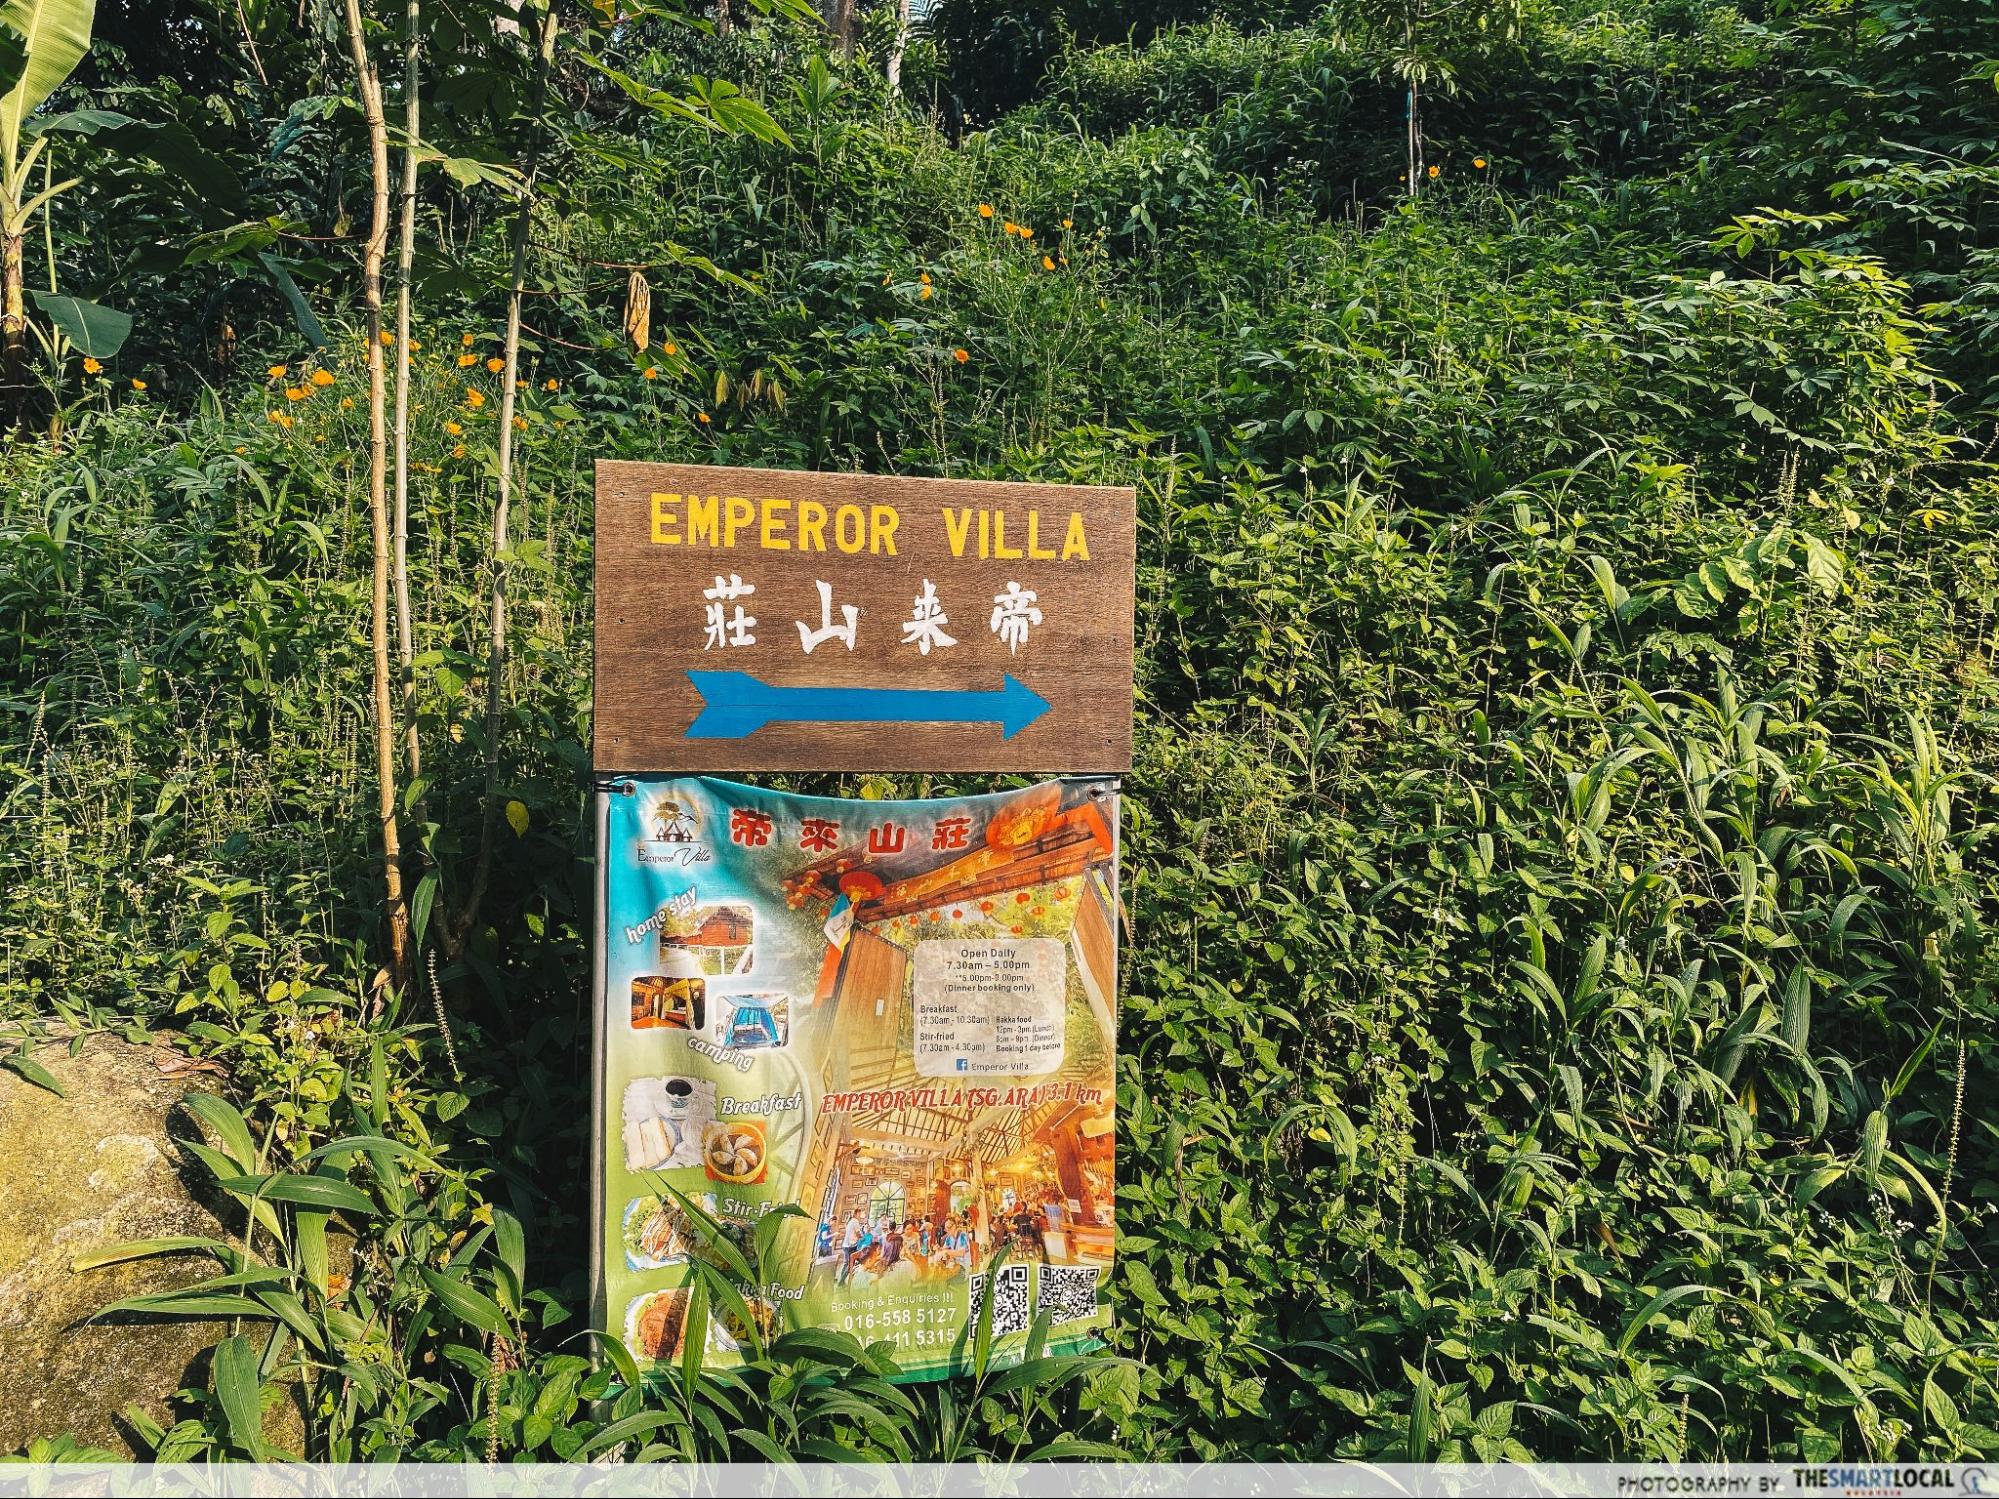 Emperor Villa - sign